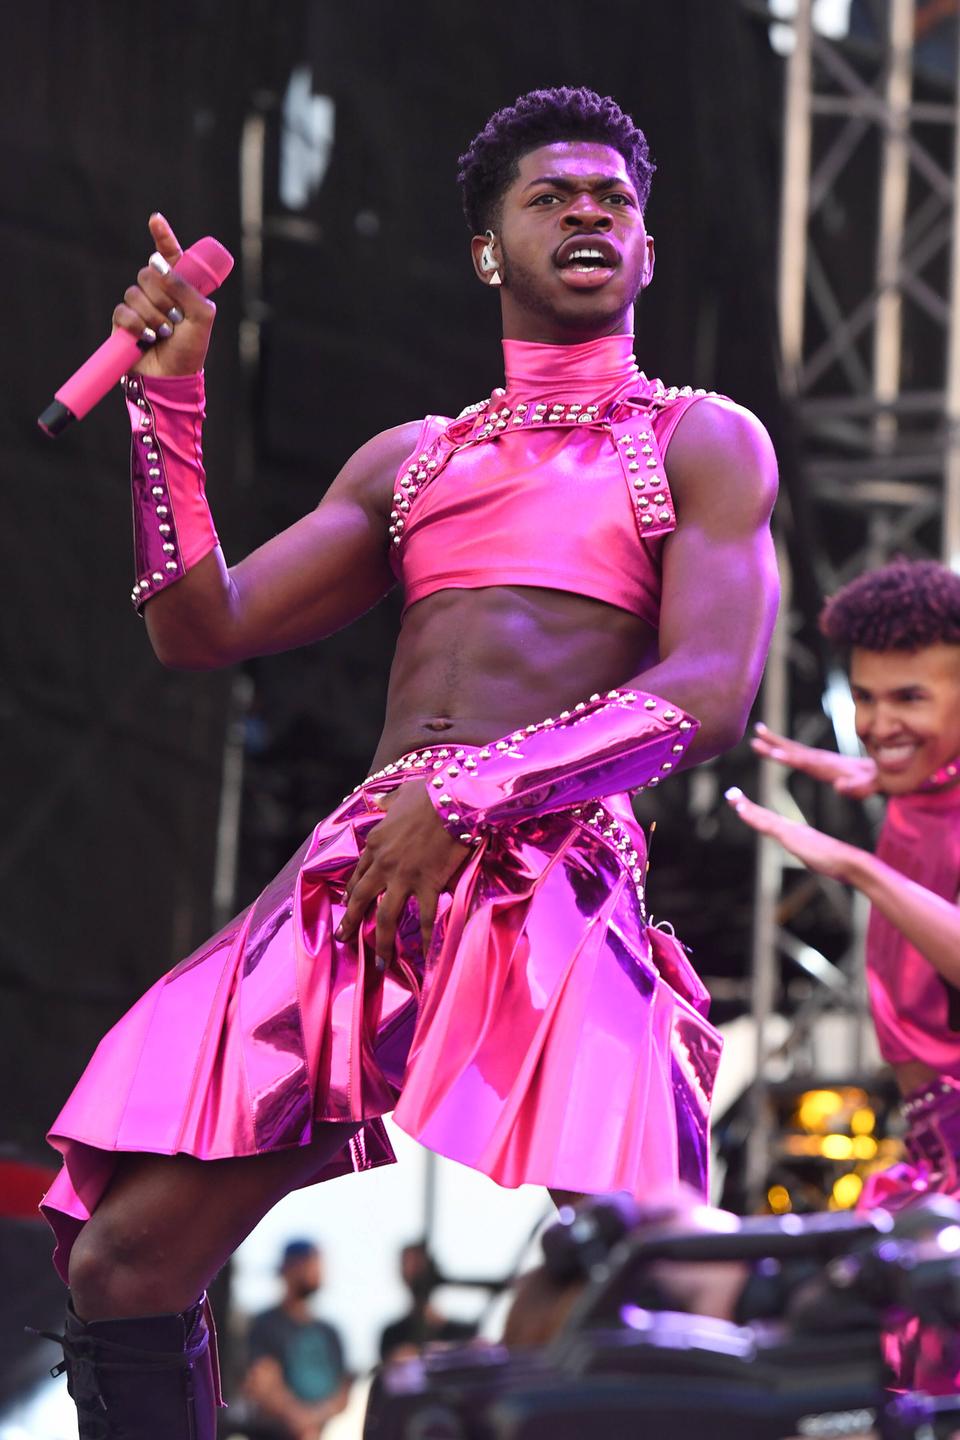 Der schwarze Rapper Lil Nas X steht auf der Bühne in einem pinken Röckchen, pinken Top und hält ein pinkes Mikrofon in der Hand. Mit der anderen Hand fast er sich in den Schritt.